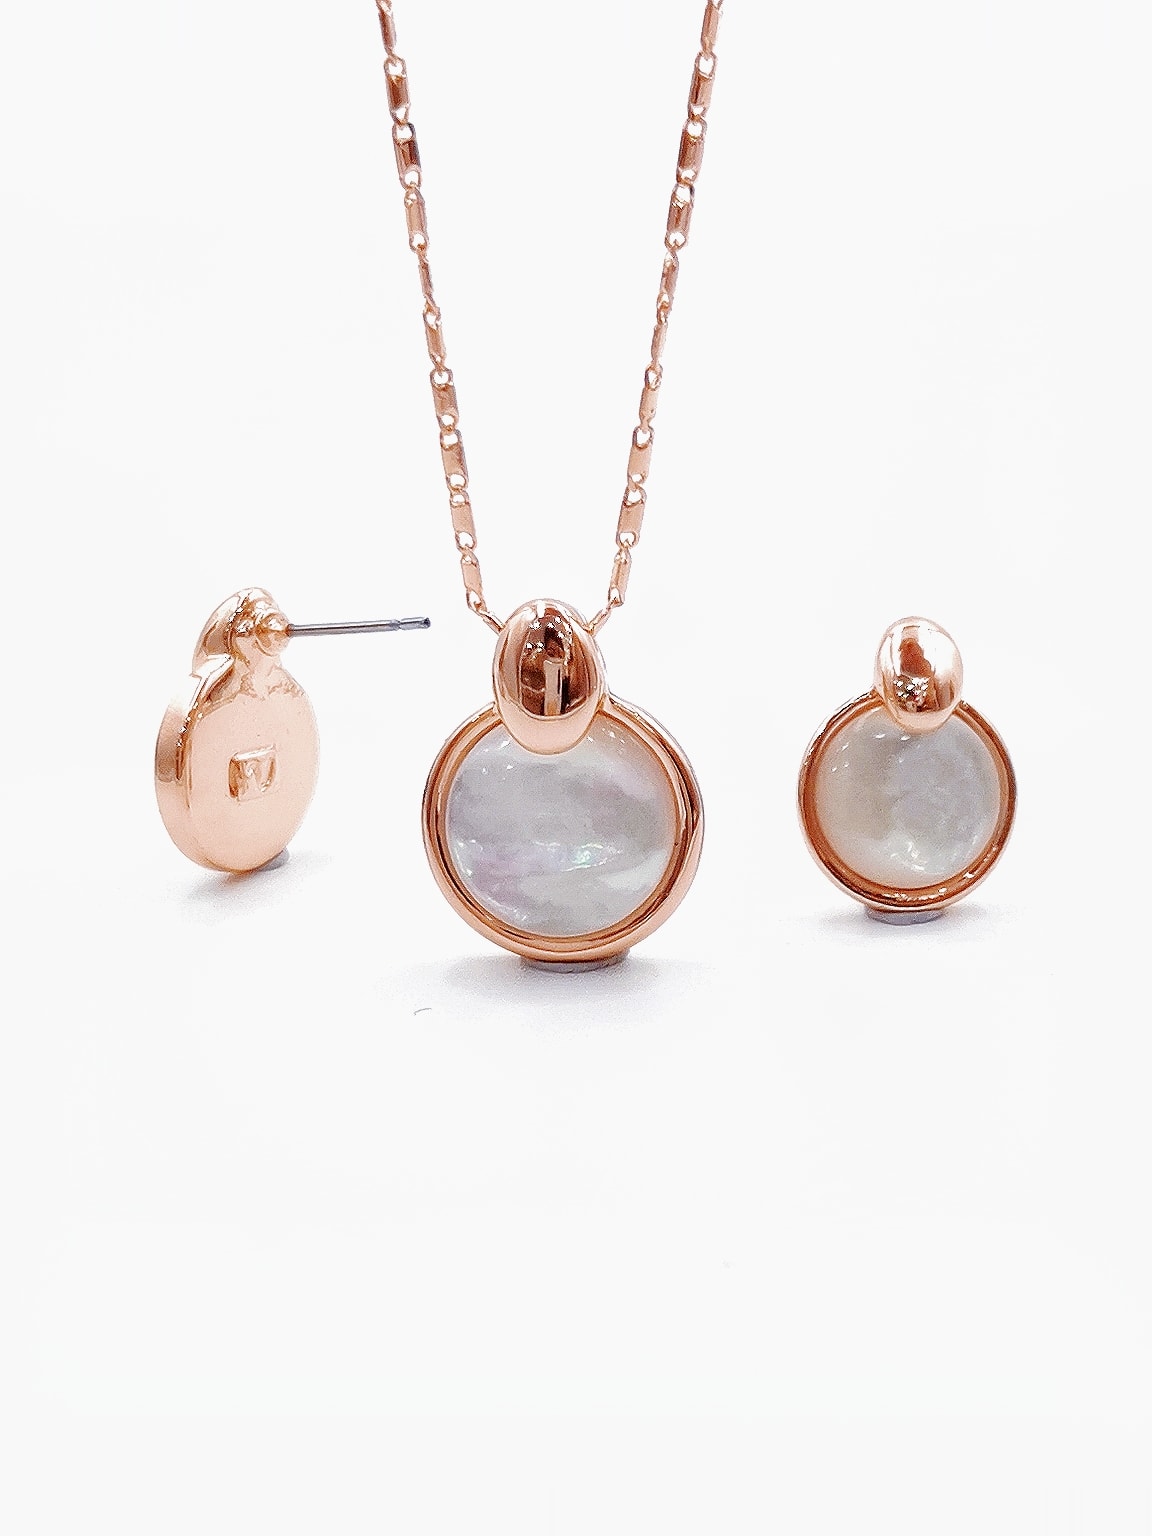 Amazon.com: Nyusdar Women Minimalism Jewelry Gold/Silver 